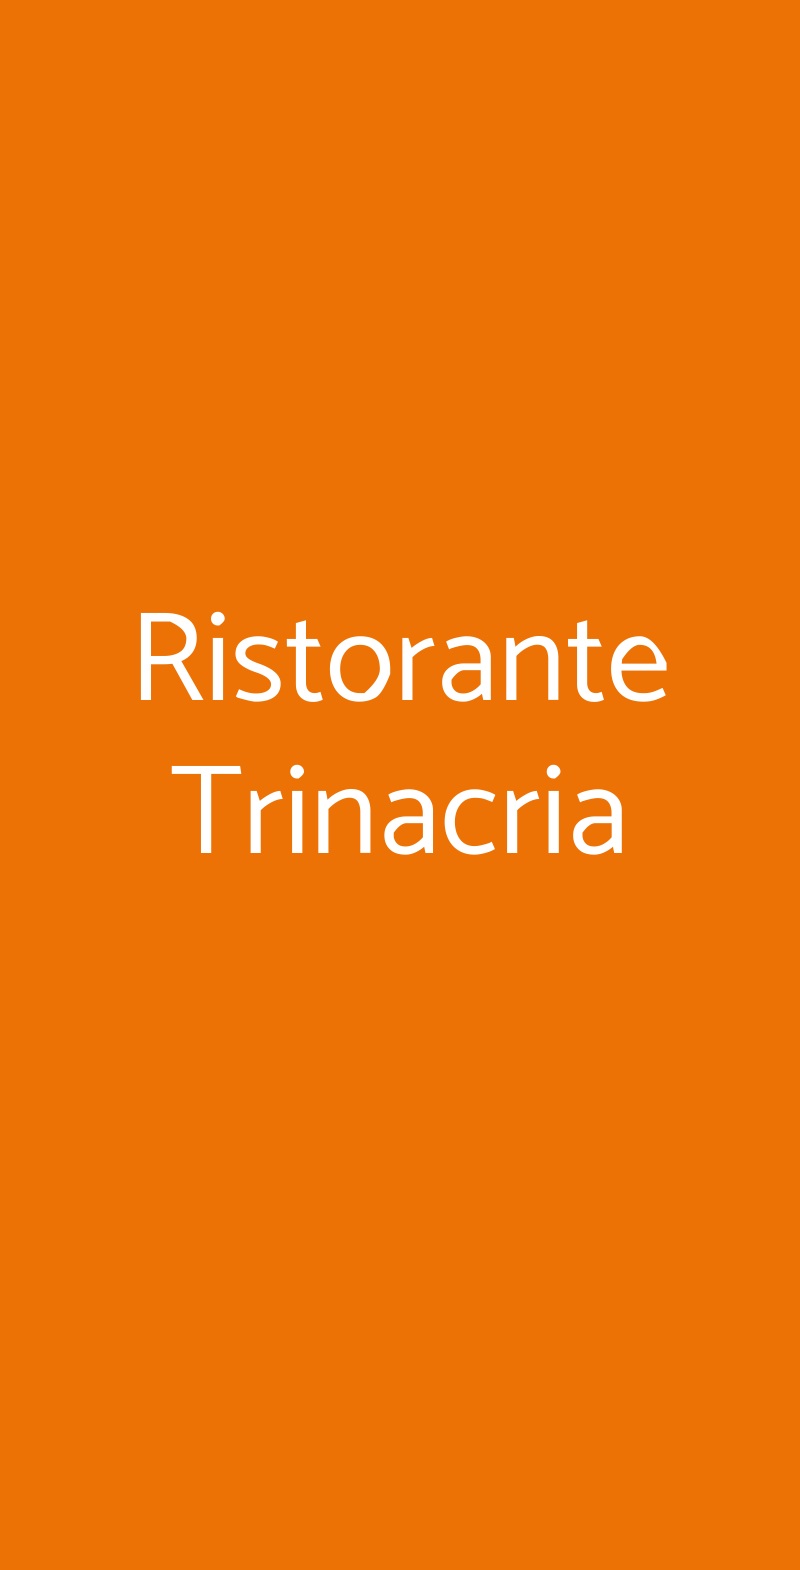 Ristorante Trinacria San Vito lo Capo menù 1 pagina